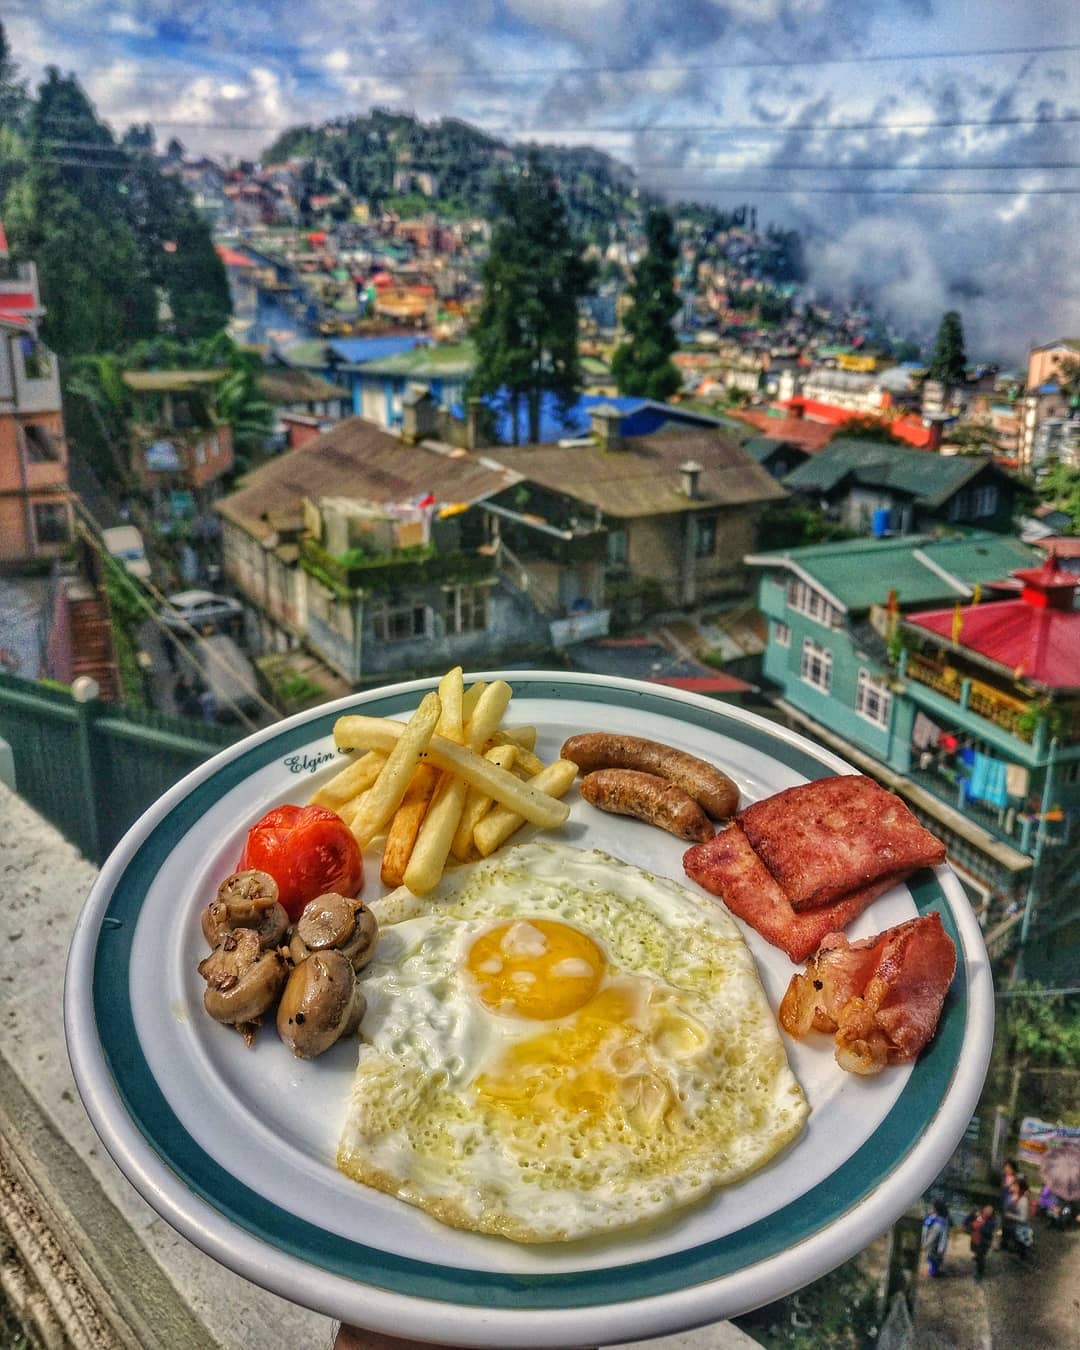 Best Time To Visit Darjeeling